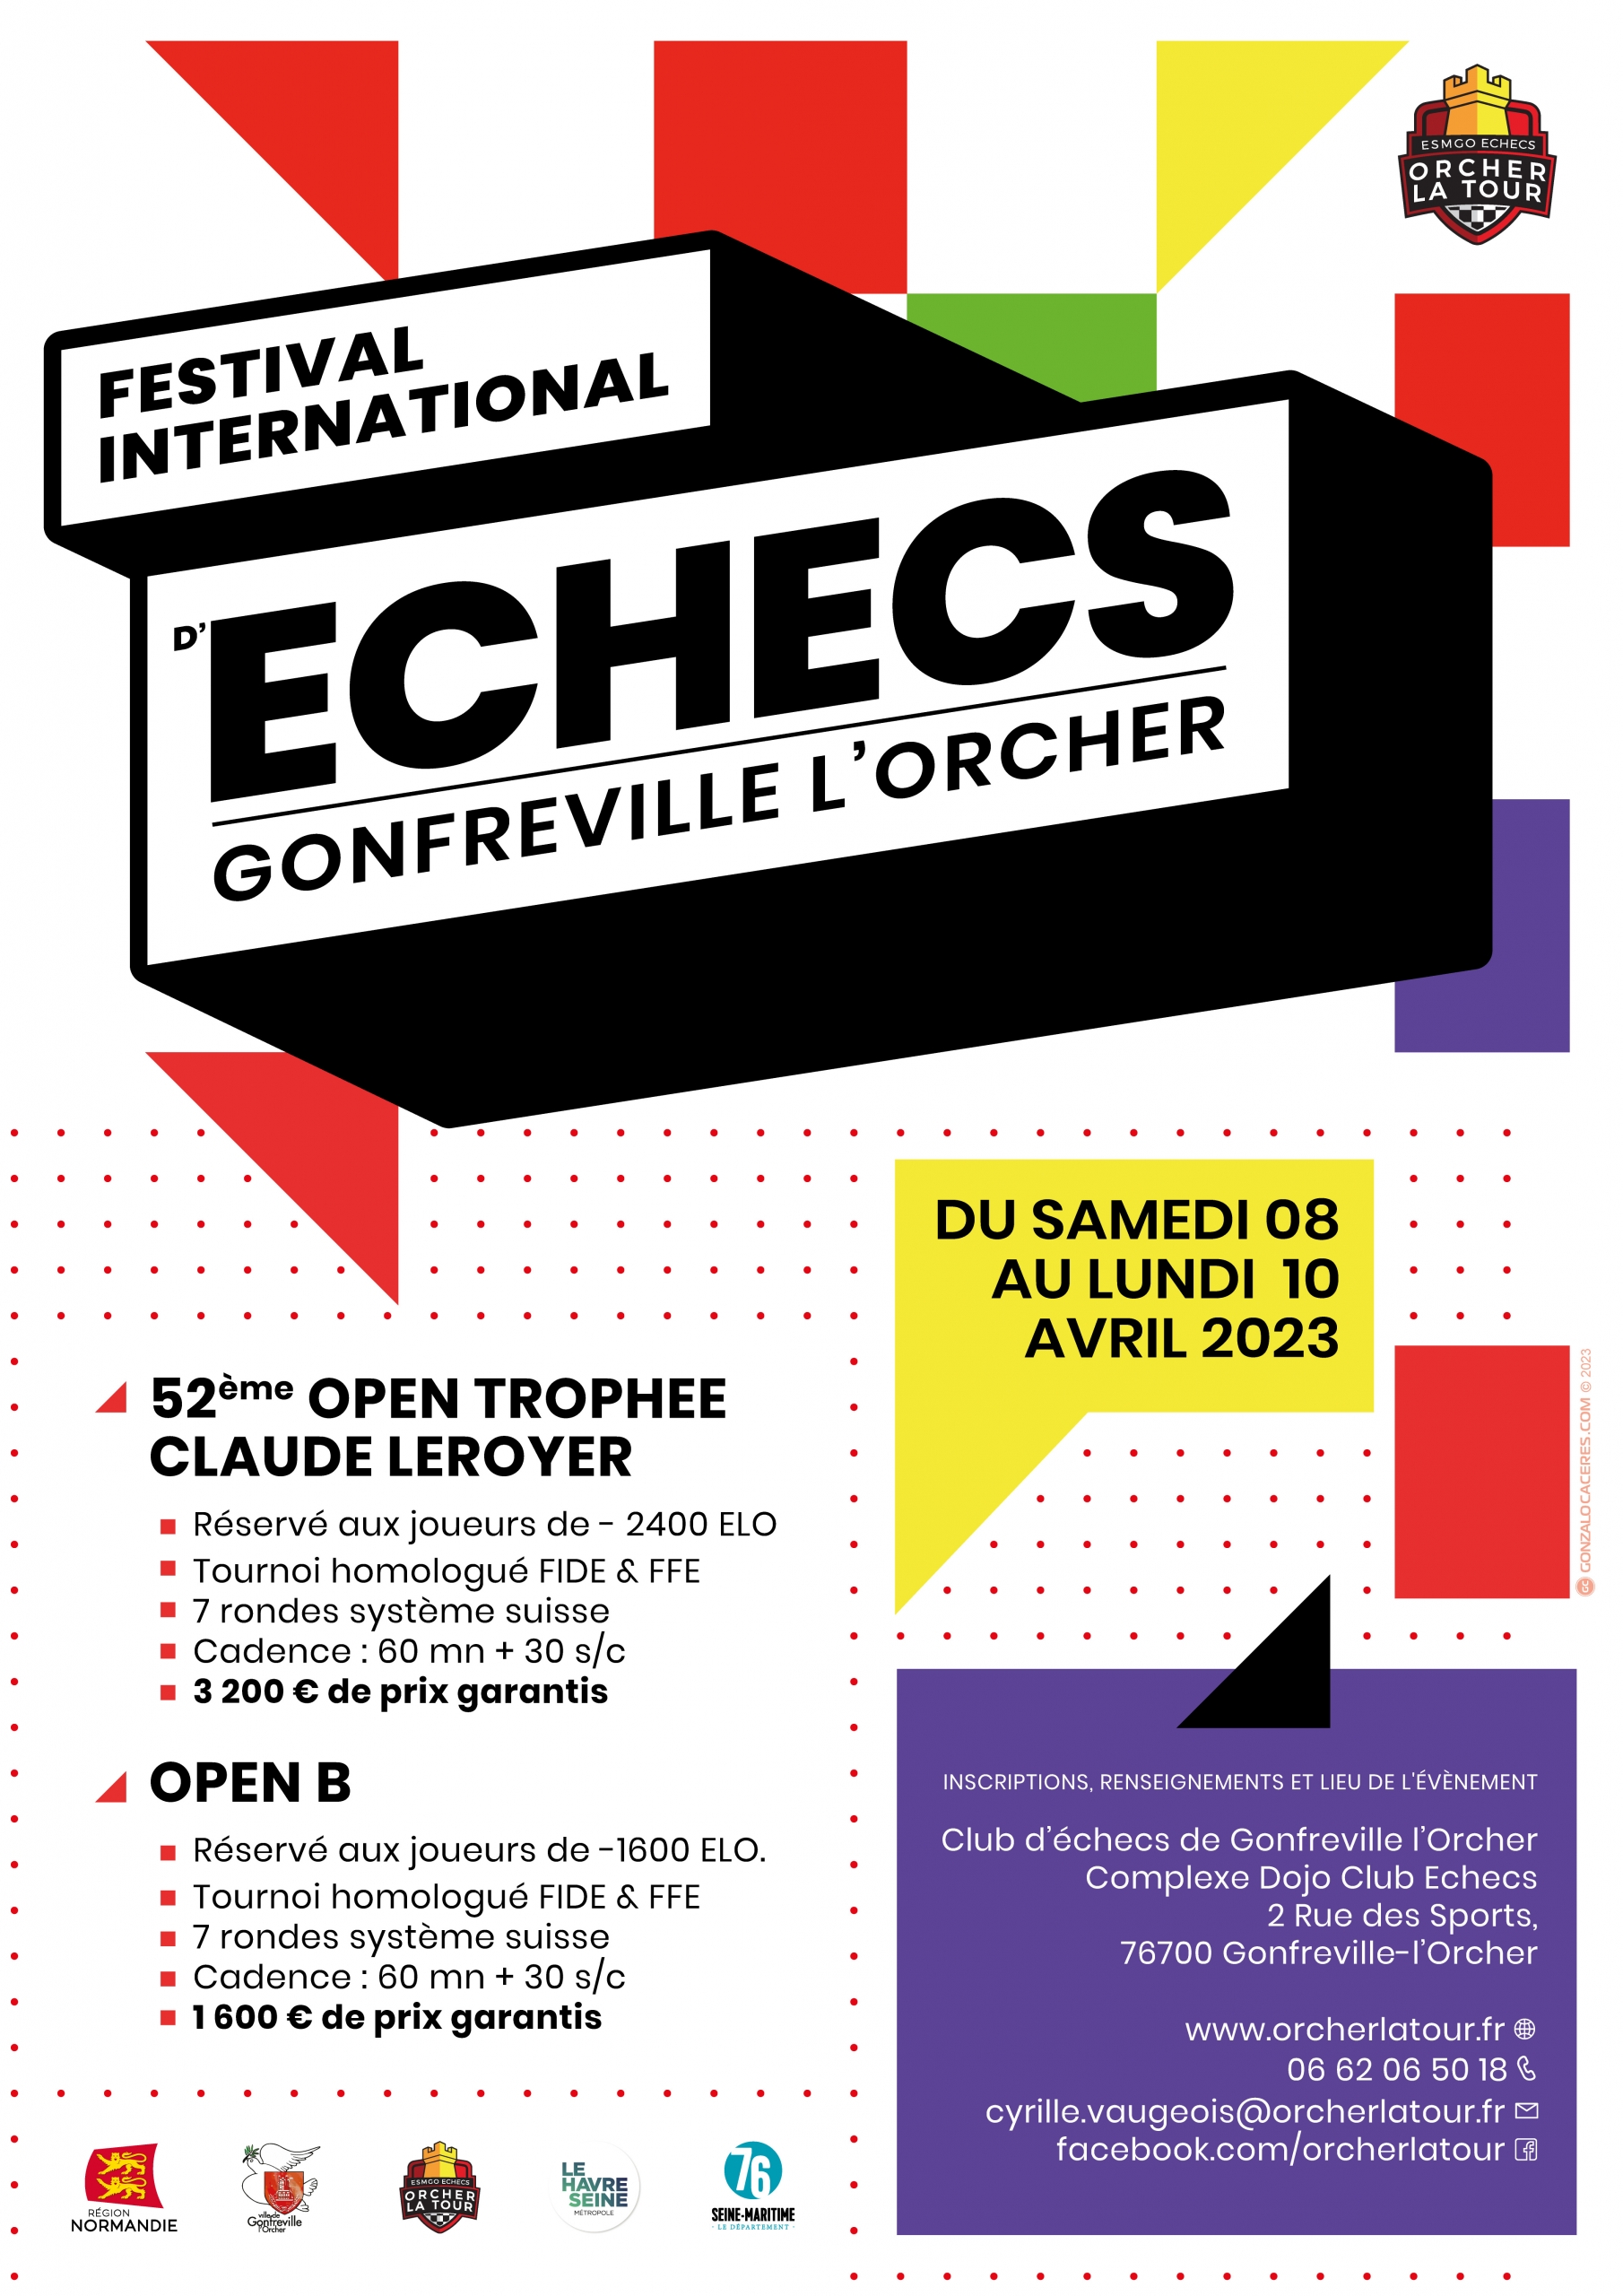 52e Trophée Claude LEROYER @ Complexe Dojo Club Échecs | Gonfreville-l'Orcher | Normandie | France